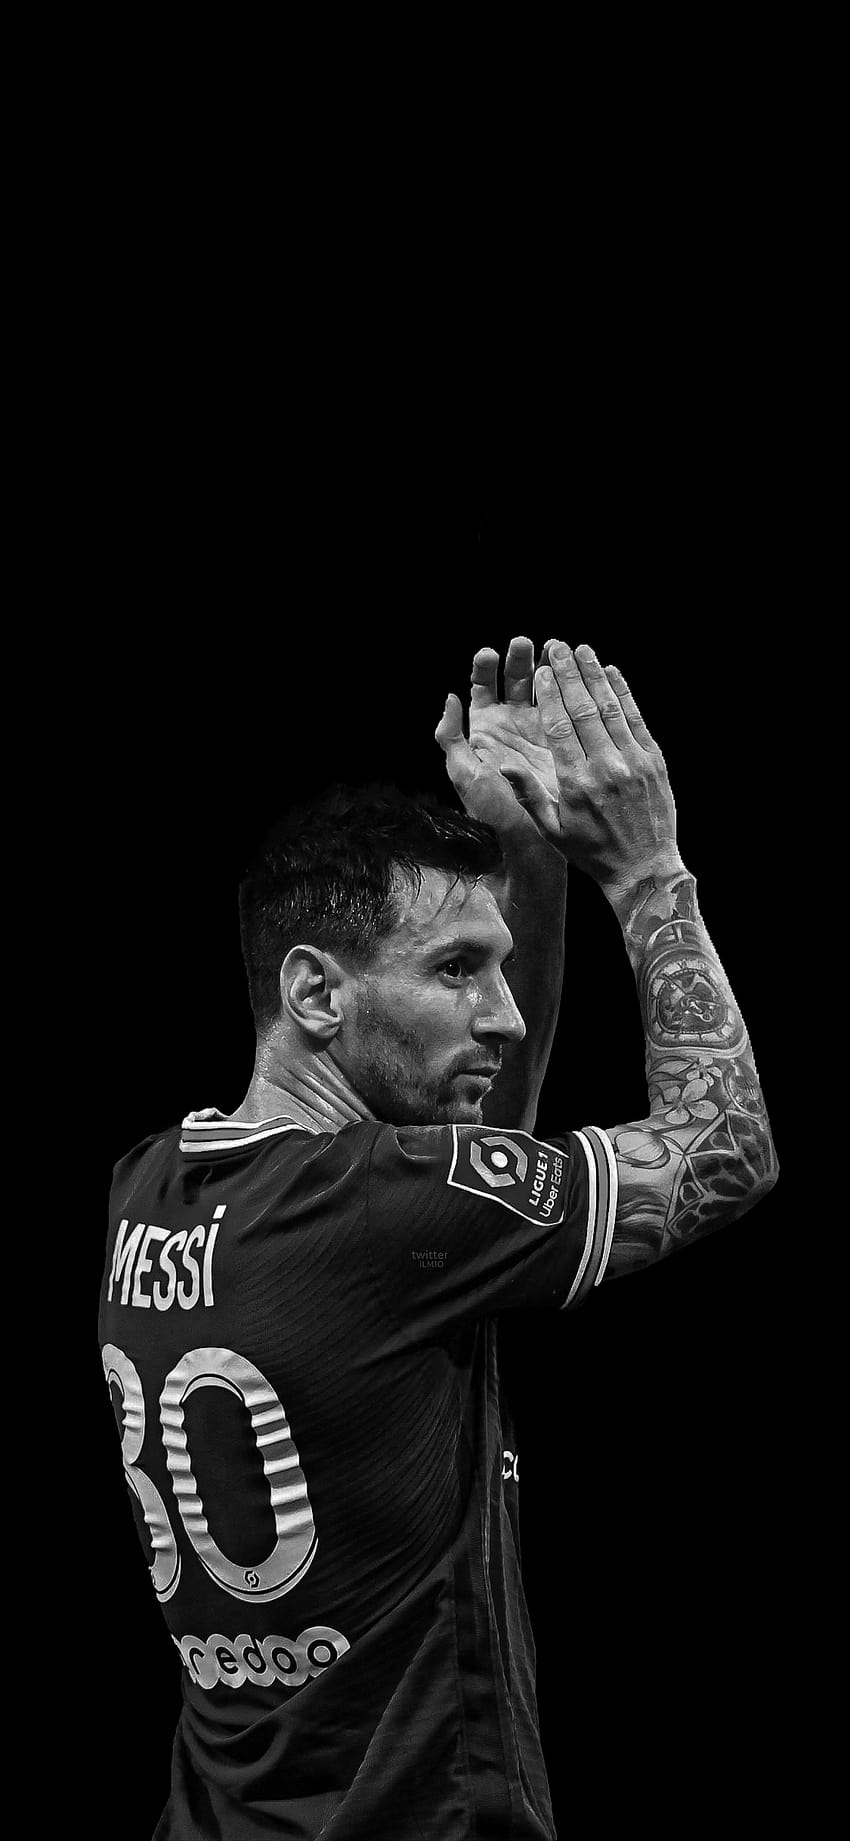 Messi paris saint germain HD phone wallpaper | Pxfuel